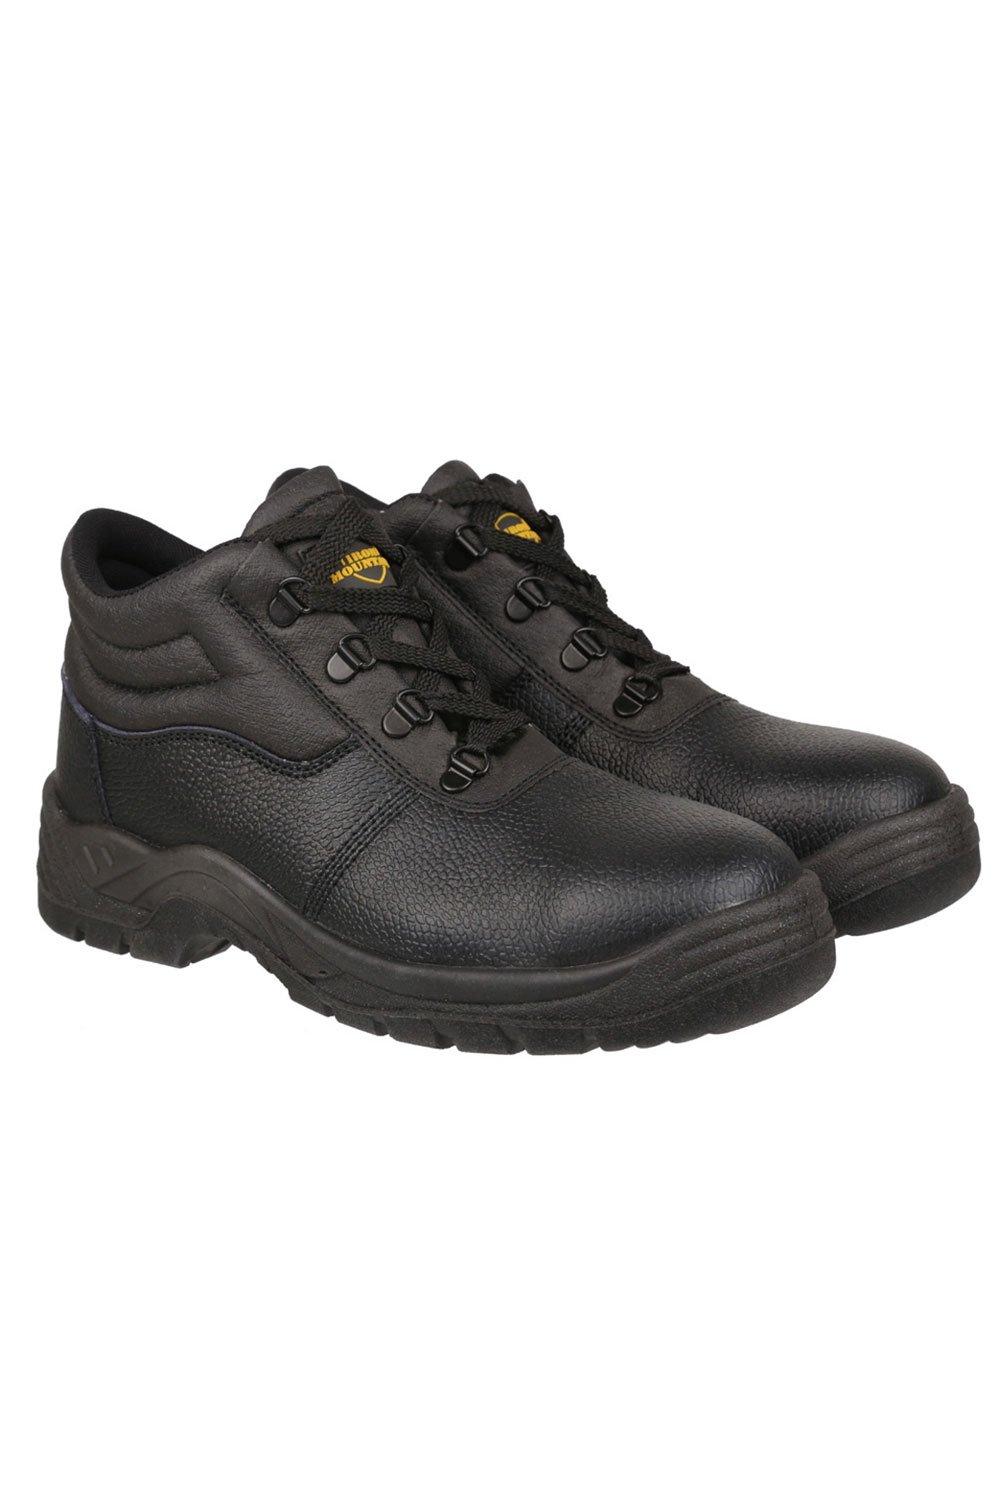 Ботильоны Chukka Work со стальным носком и межподошвой S3 SRC Work Iron Mountain, черный мужская защитная рабочая обувь со стальным носком непрокалываемые рабочие ботинки удобные защитные кроссовки желаемая обувь